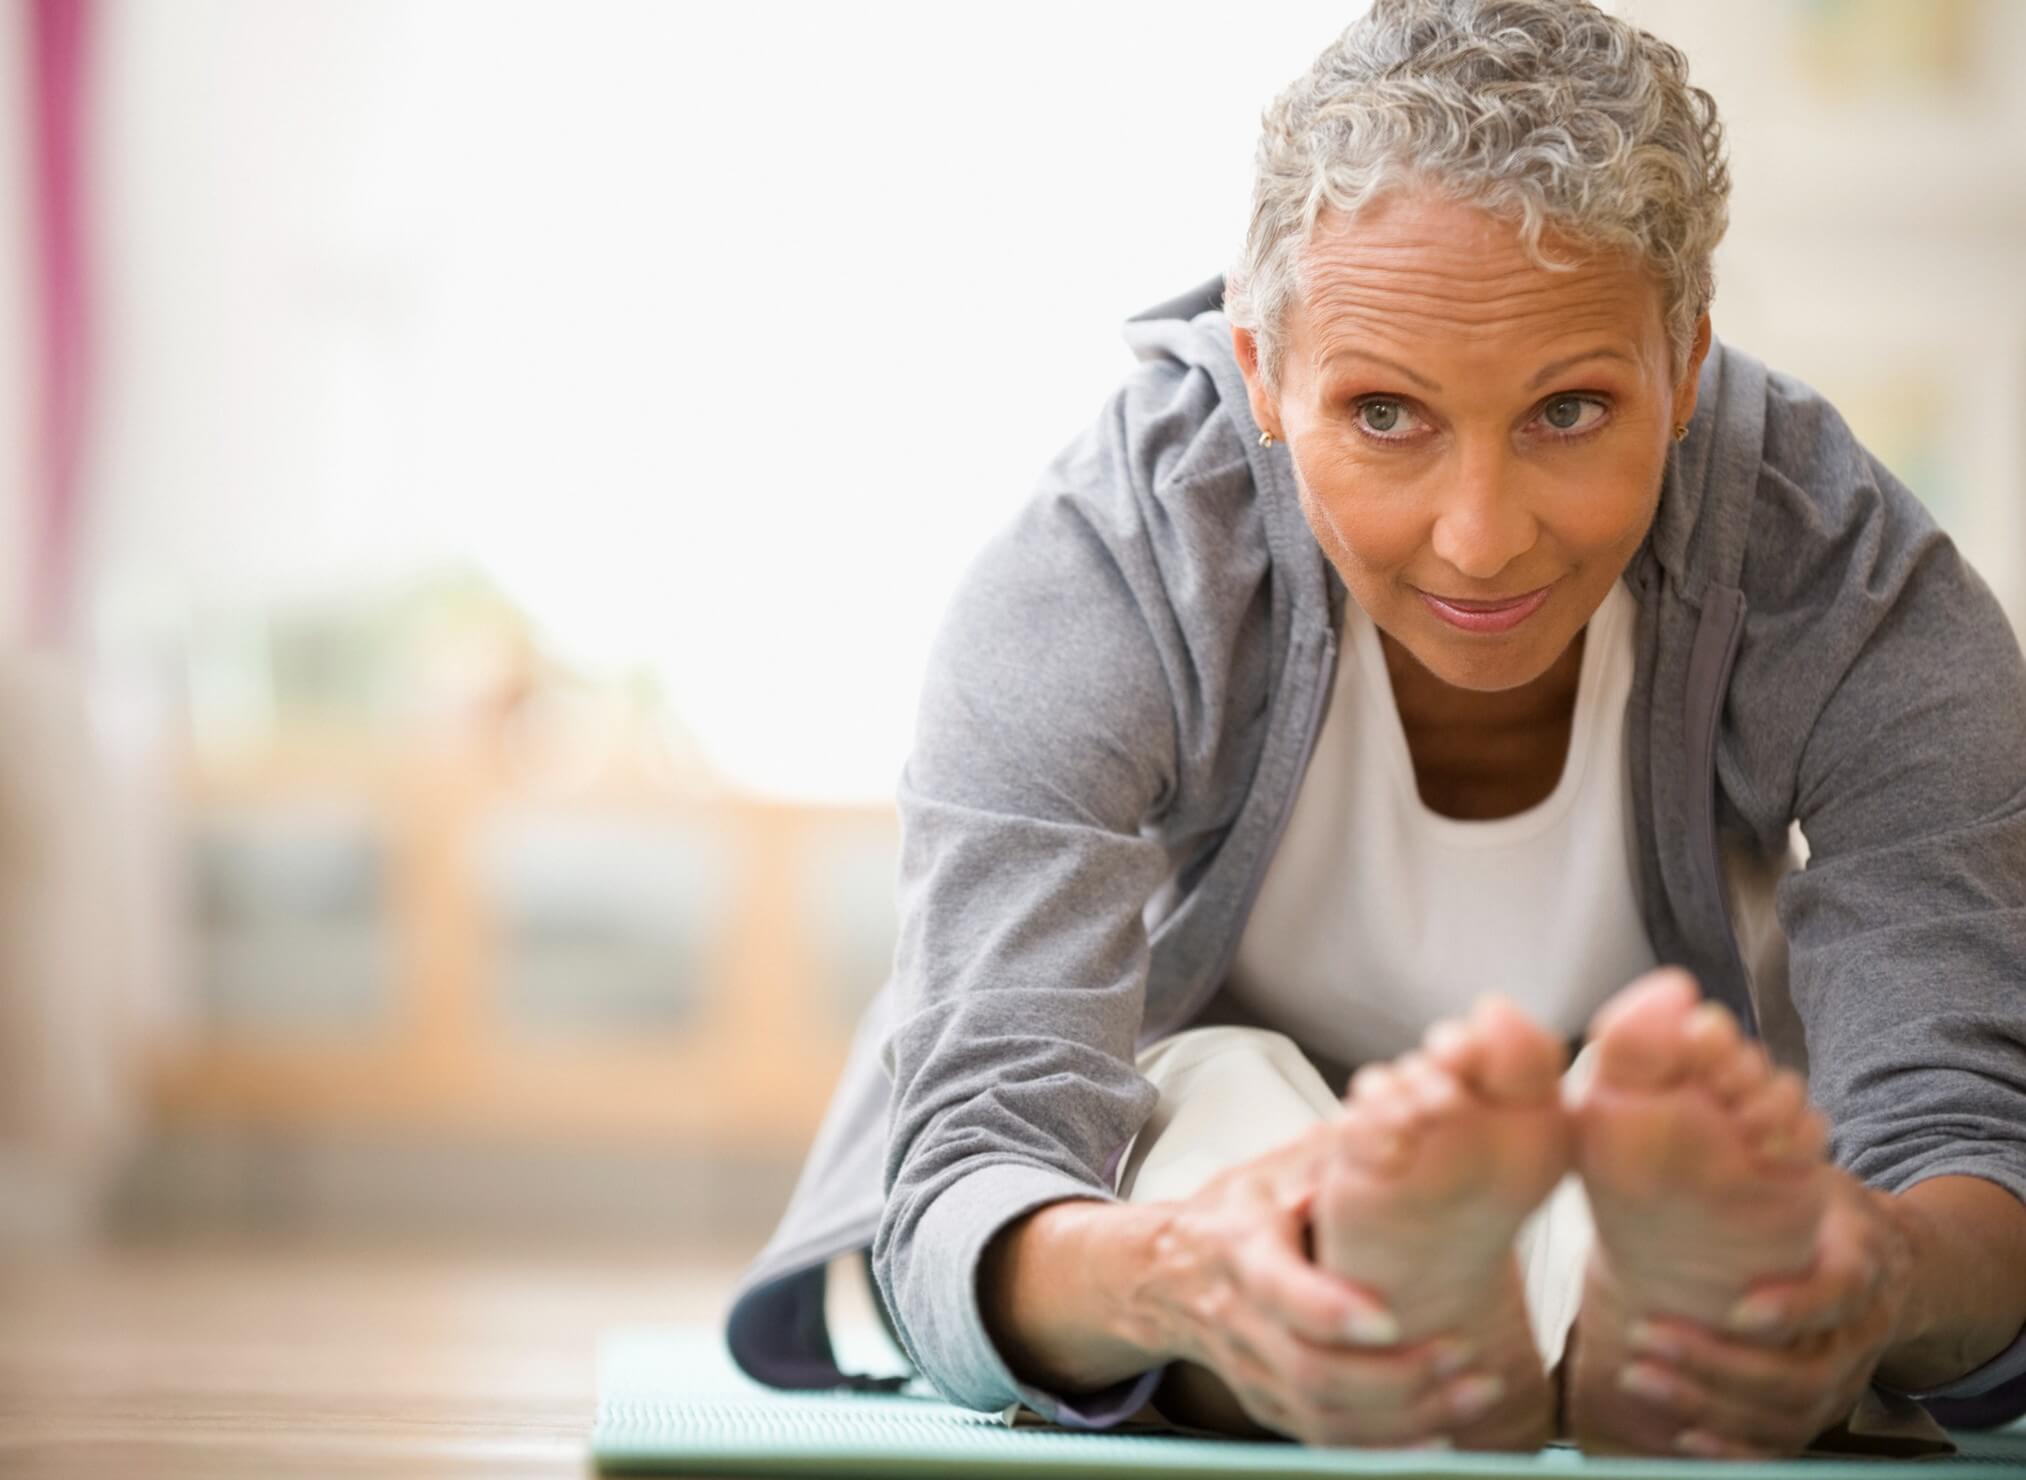 Envelhecer com saúde é possível! Invista em 5 mudanças de hábitos agora